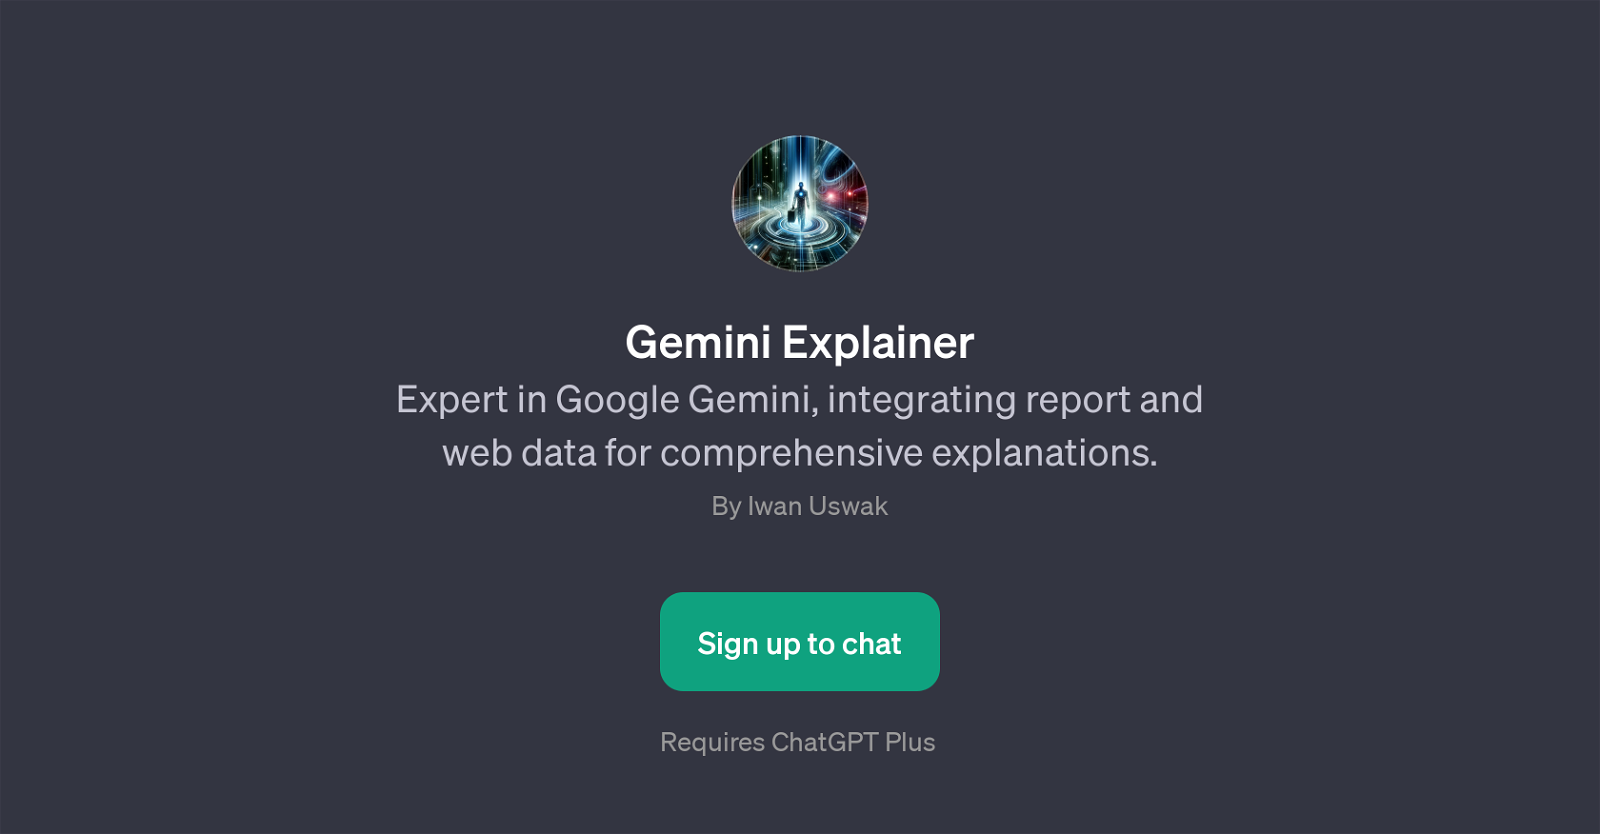 Gemini Explainer website